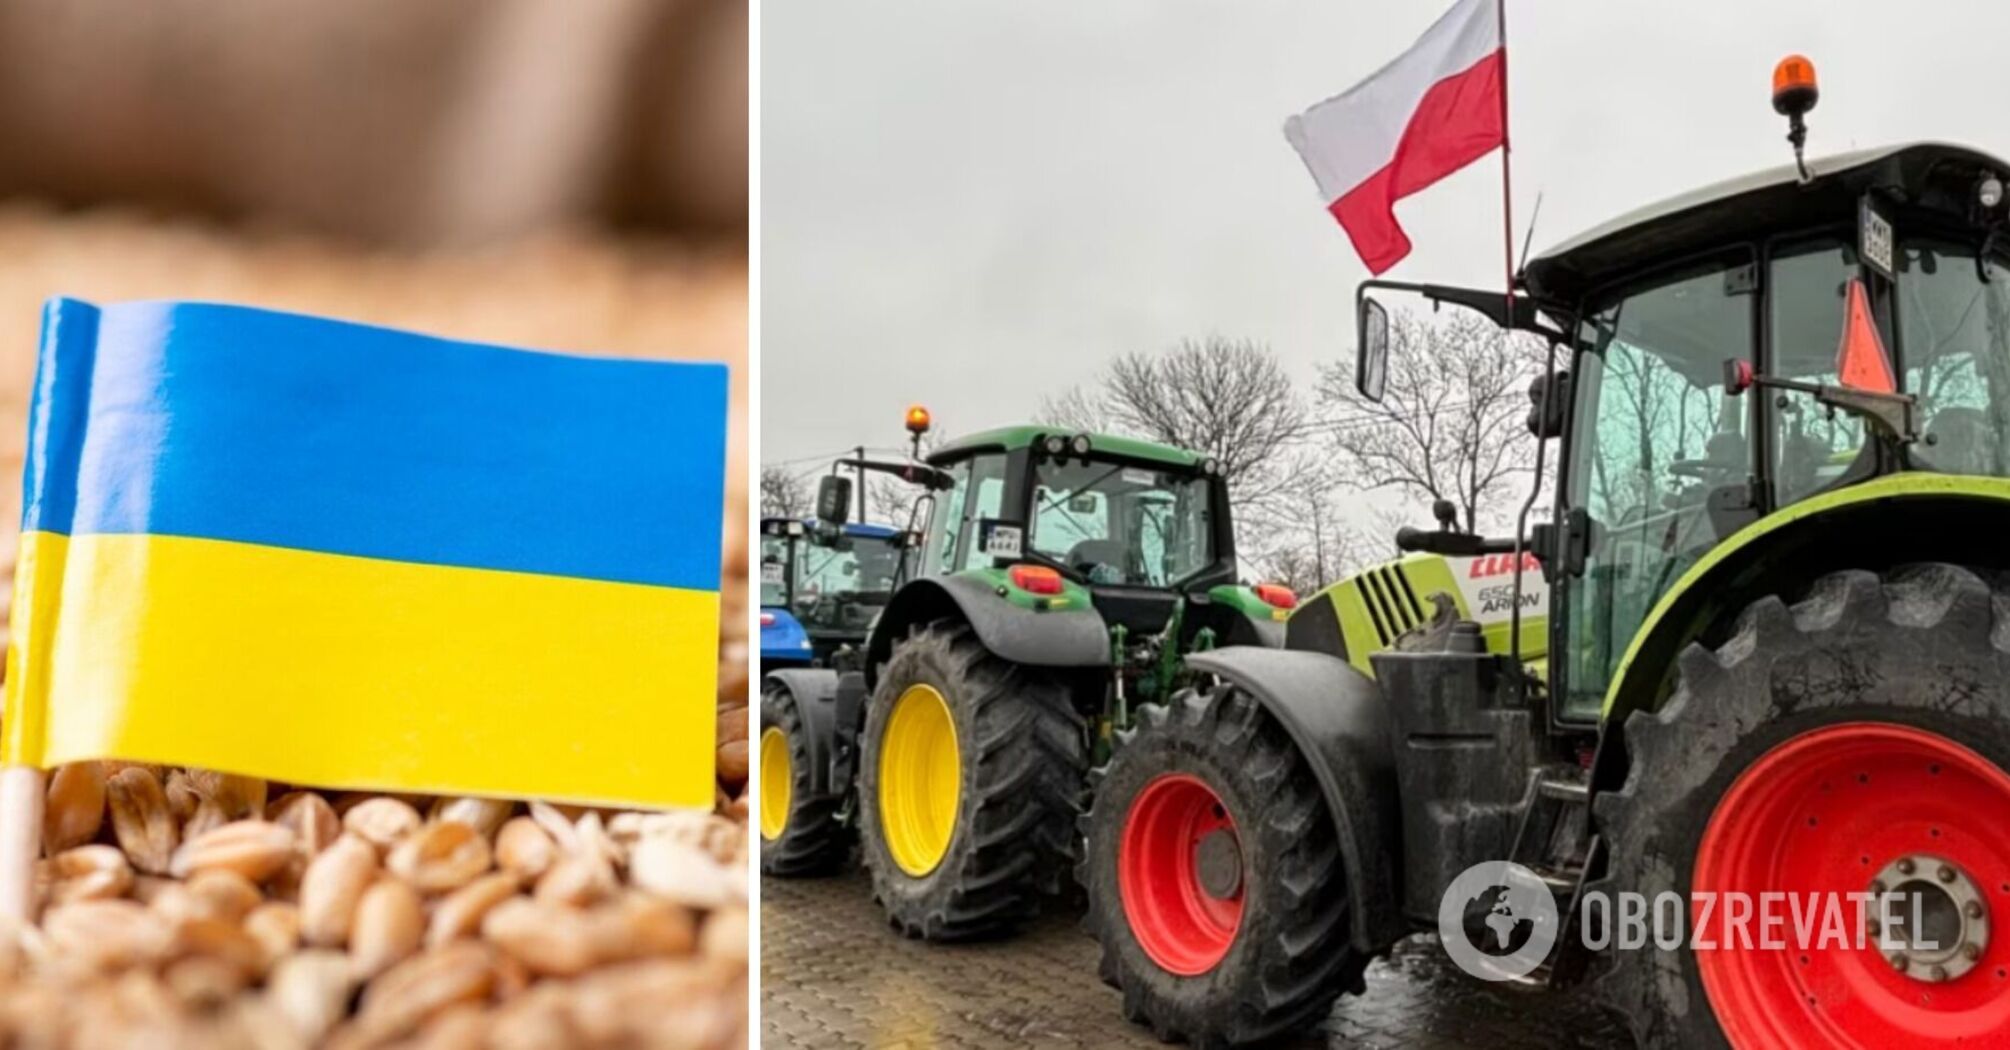 Ukraine and Poland held talks